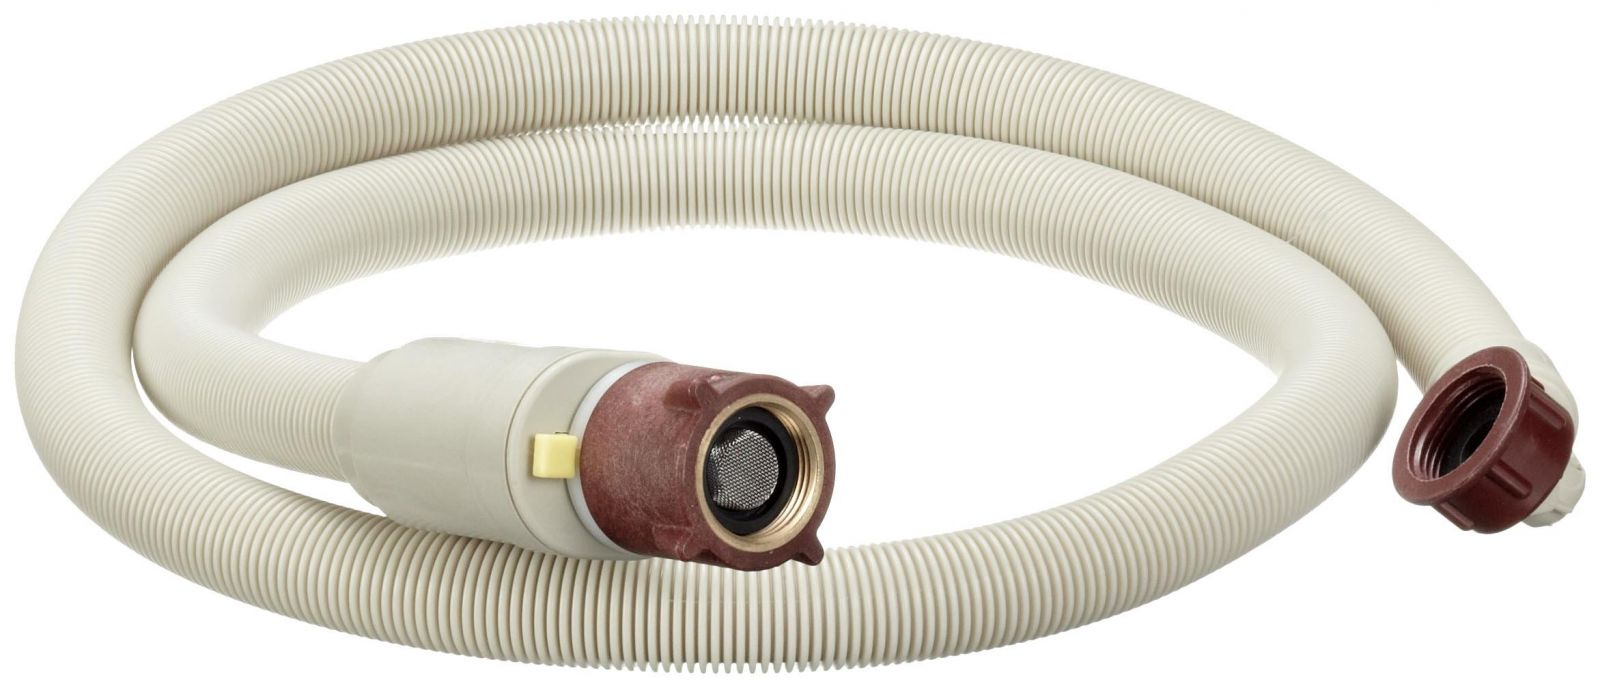 Aquastopová hadice, ventil, s mechanickým blokováním praček či myček nádobí 1,5 m - 481281728625 Whirlpool / Indesit / Ariston náhradní díly